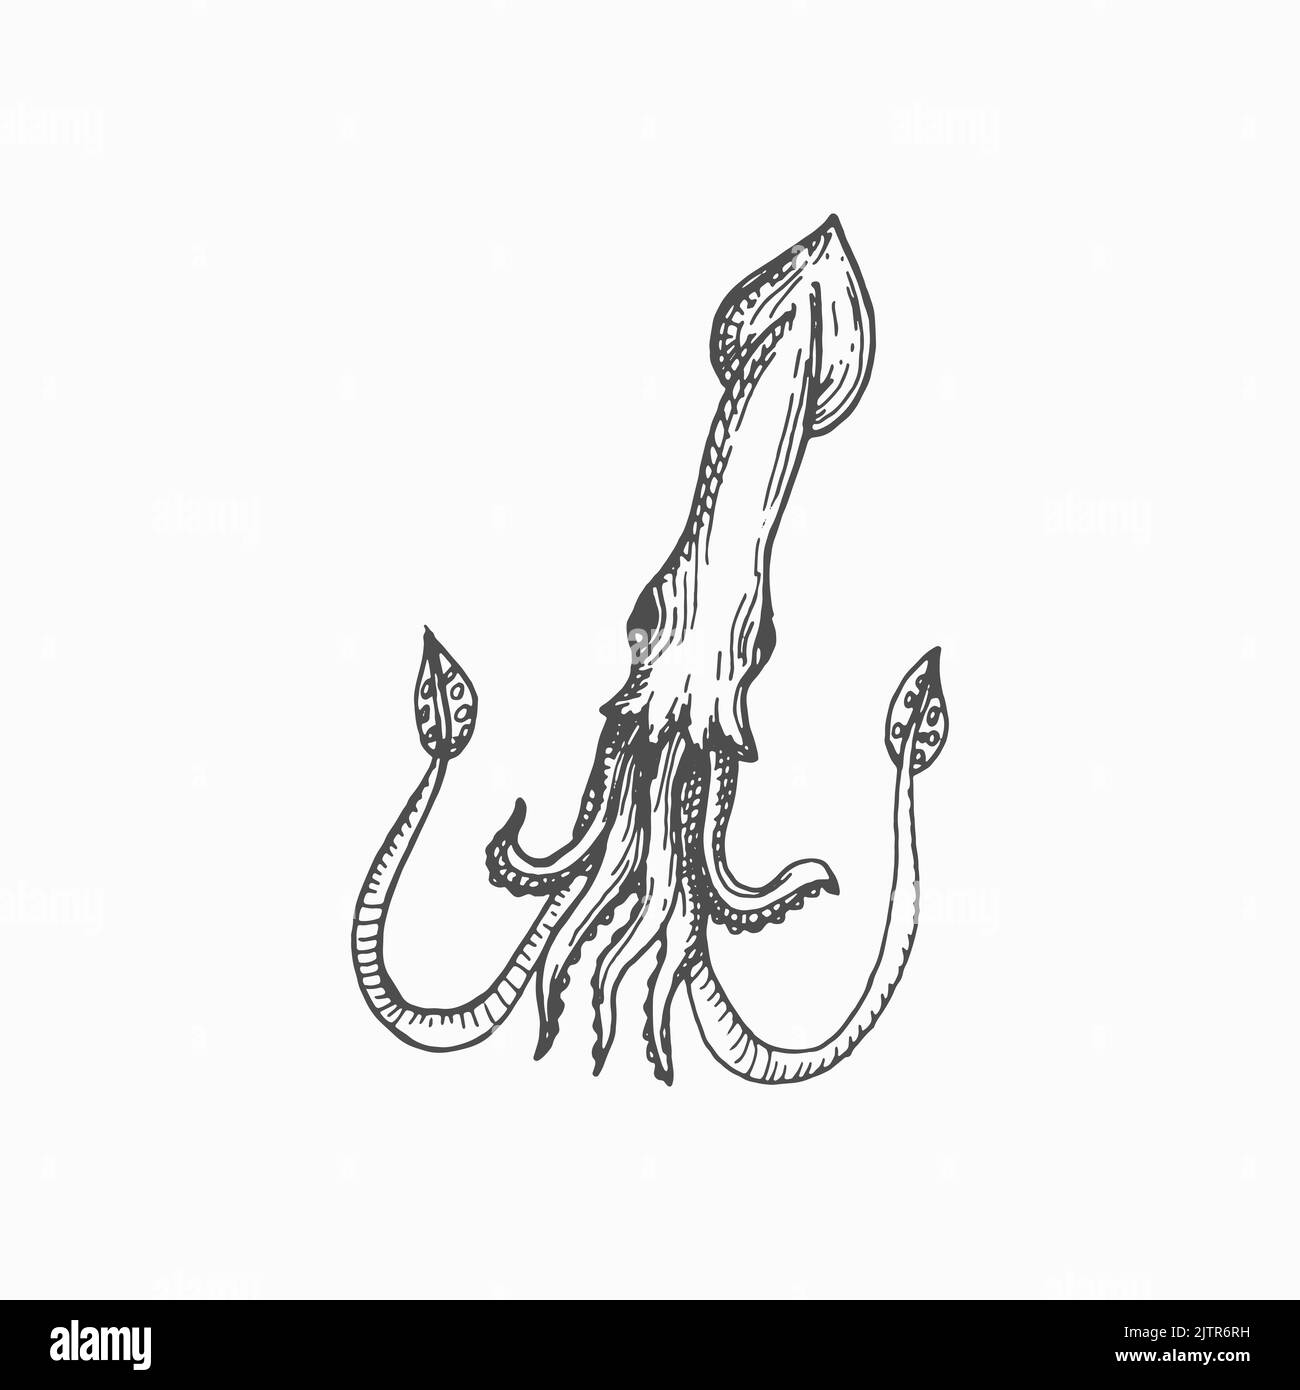 Calamari seppie giganti Cephalopods molluschi gancio-calamari isolato disegnato a mano schizzo. Mascotte vettoriale subacquea carattere, frutti di mare. Animale acquatico con corpo allungato, occhi grandi e otto braccia Illustrazione Vettoriale